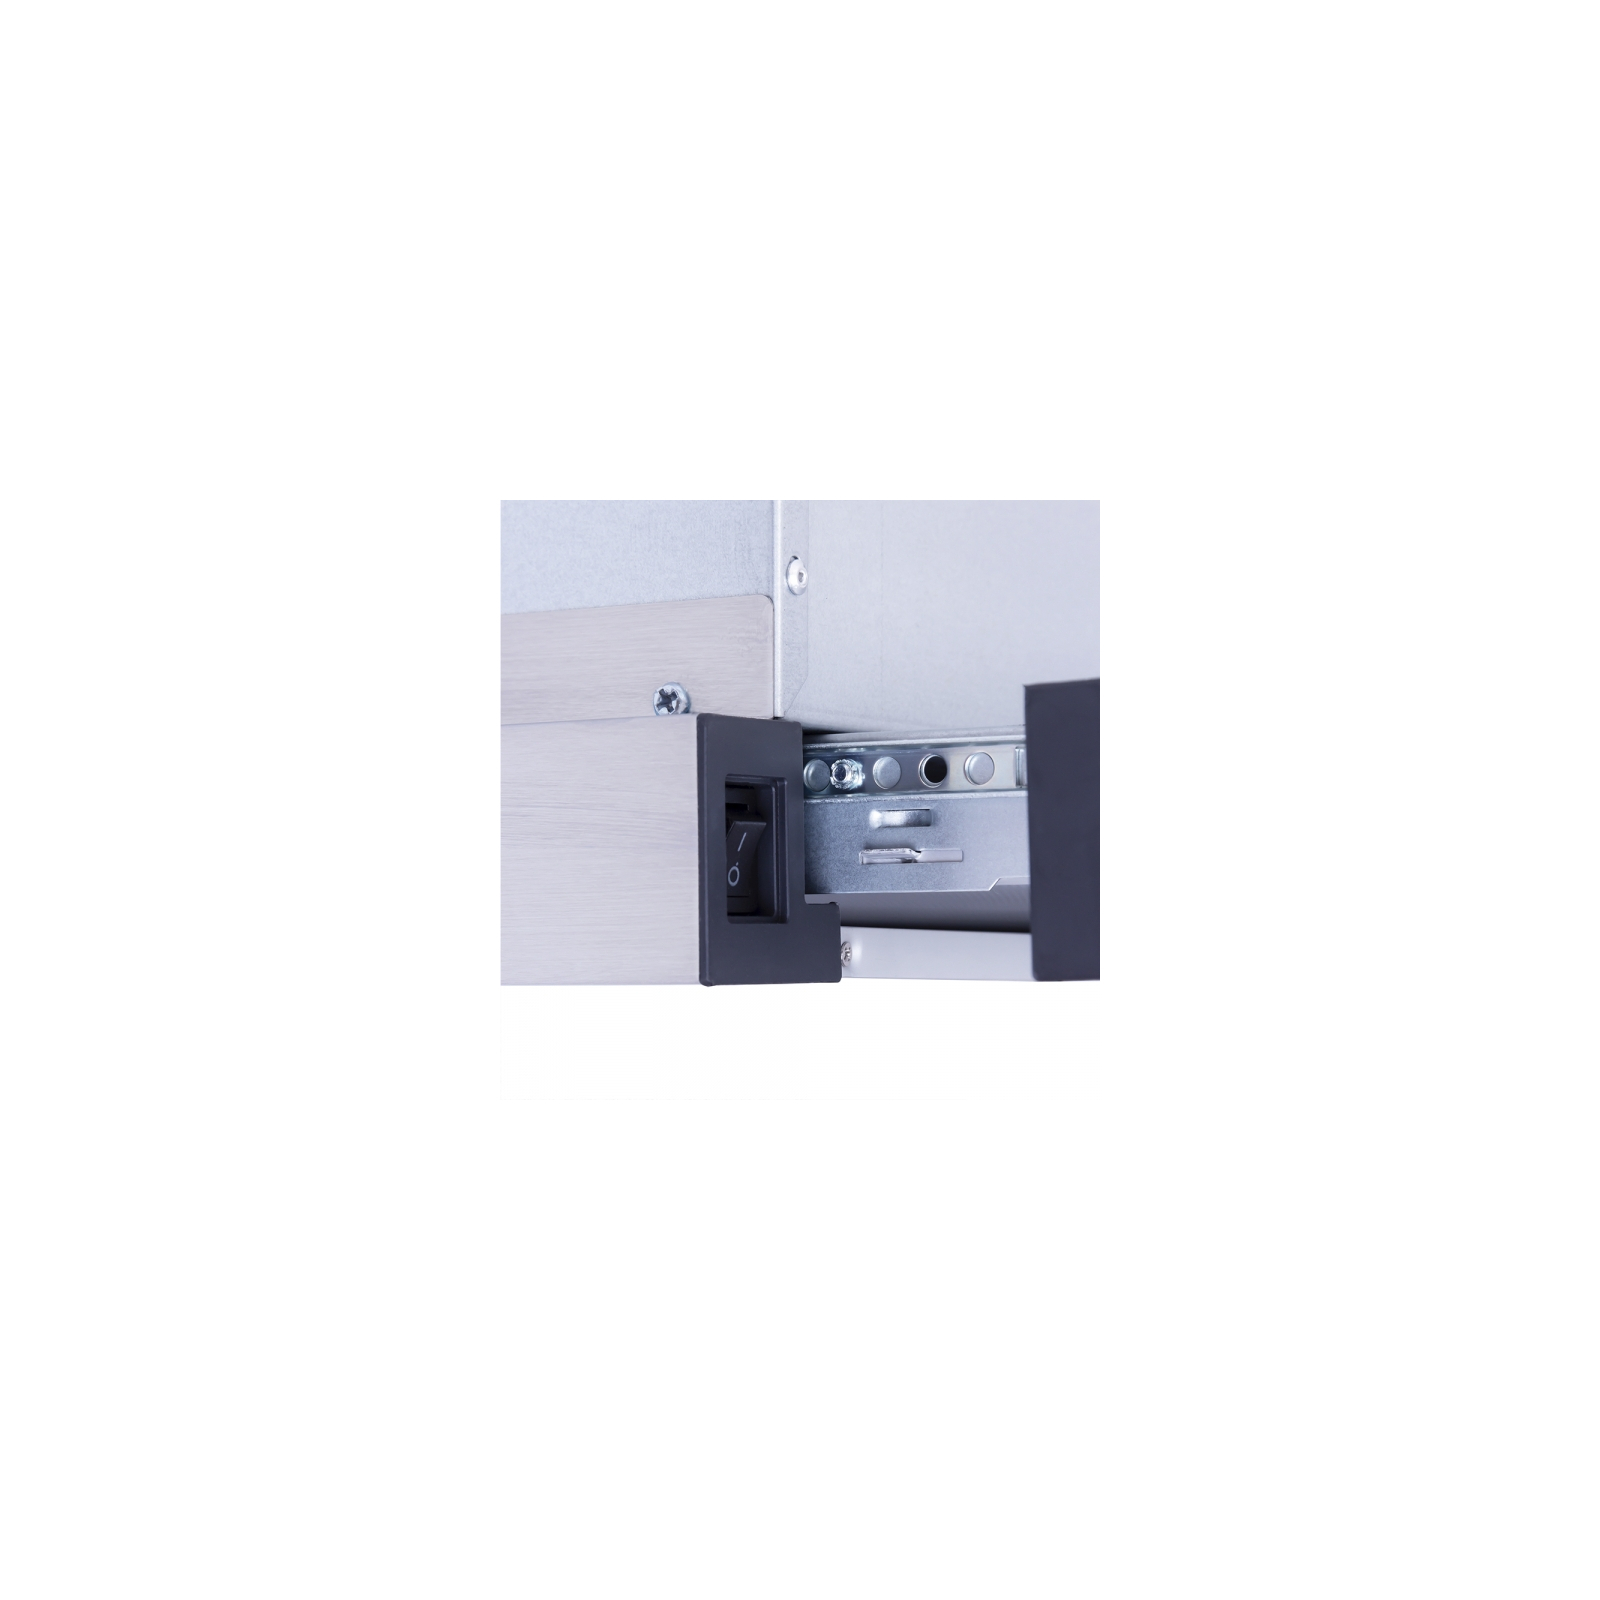 Вытяжка кухонная Minola HTL 6615 I 1000 LED изображение 5